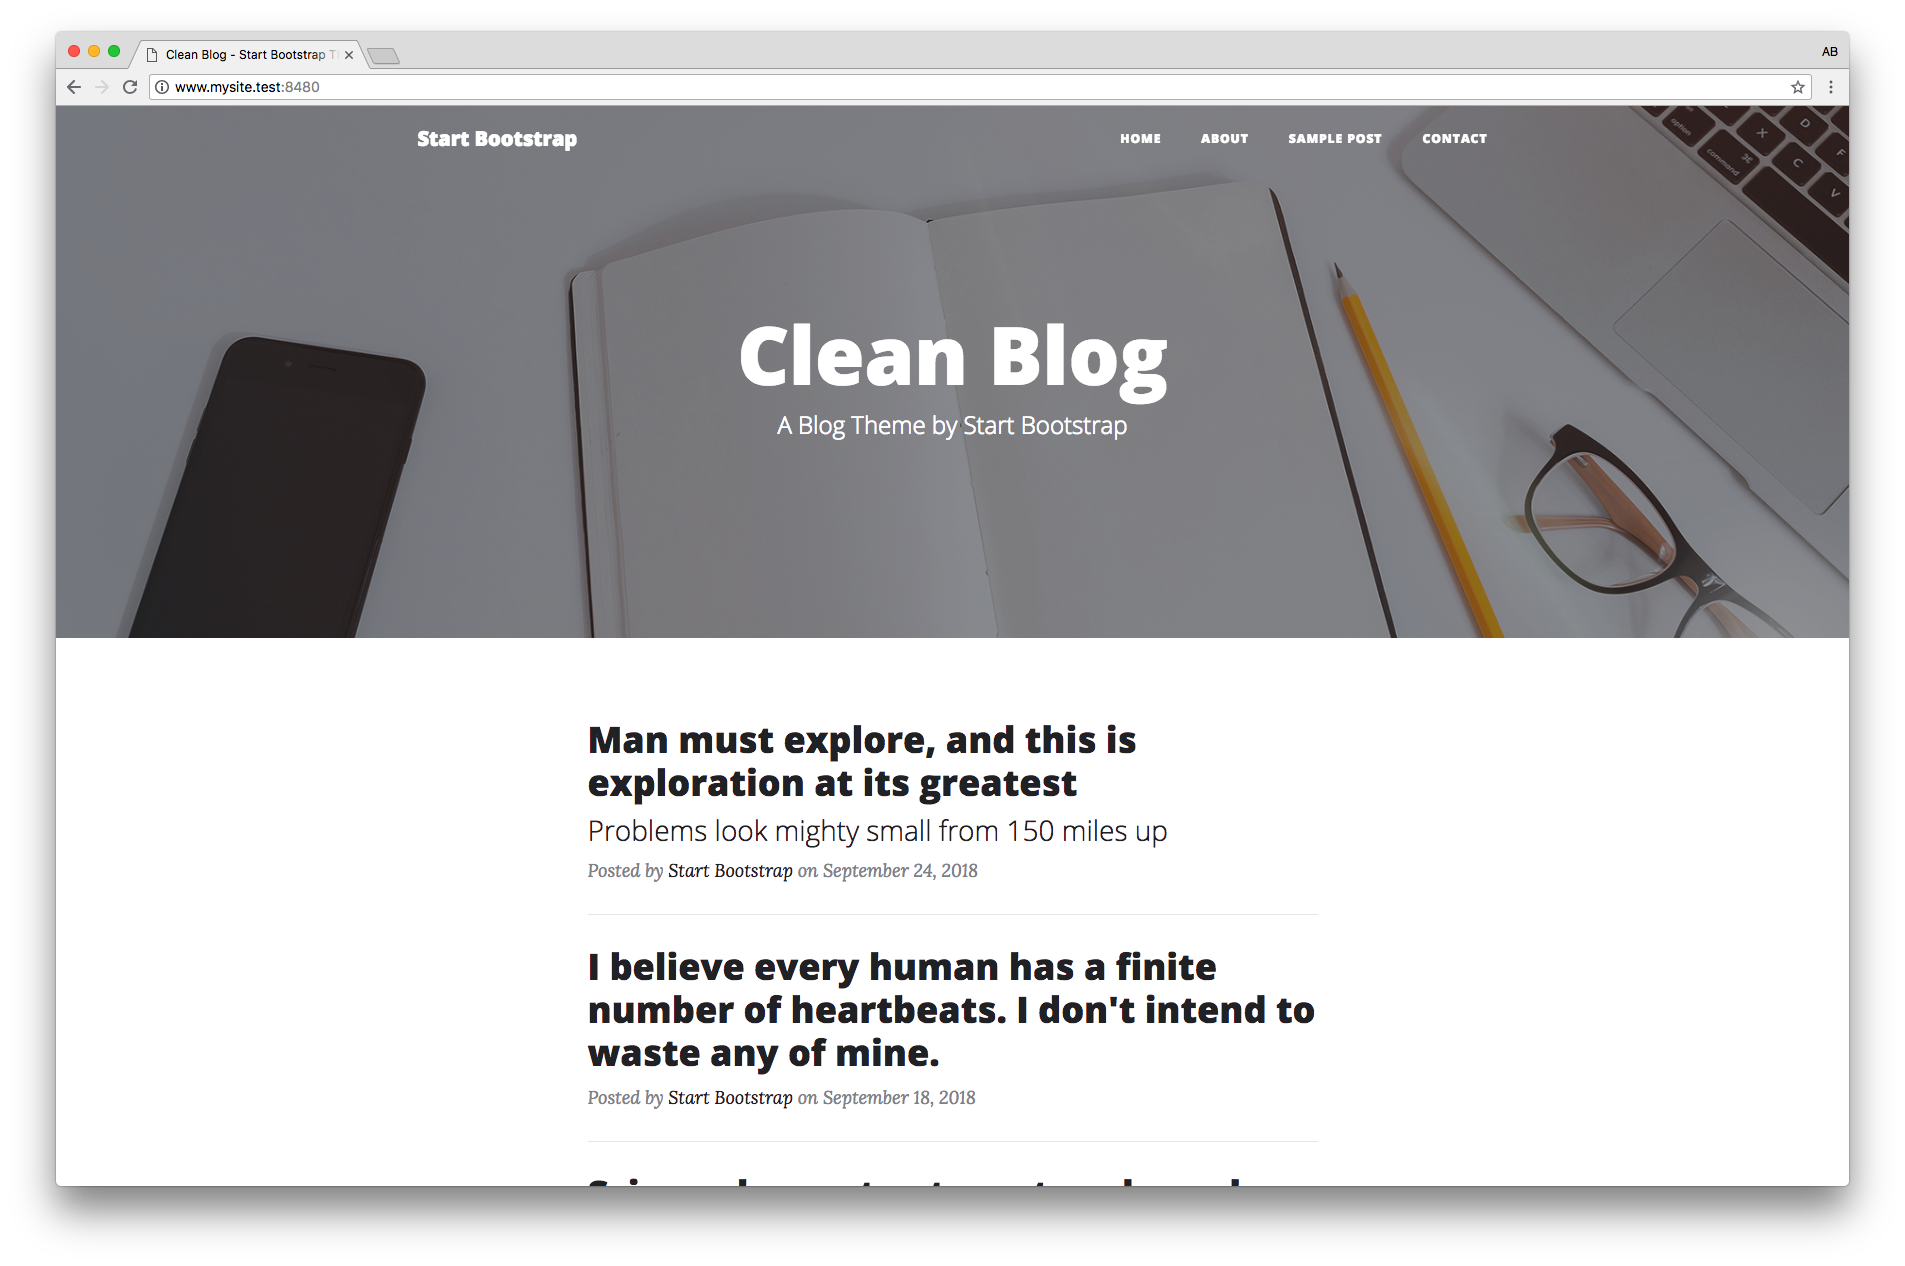 theme-clean-blog